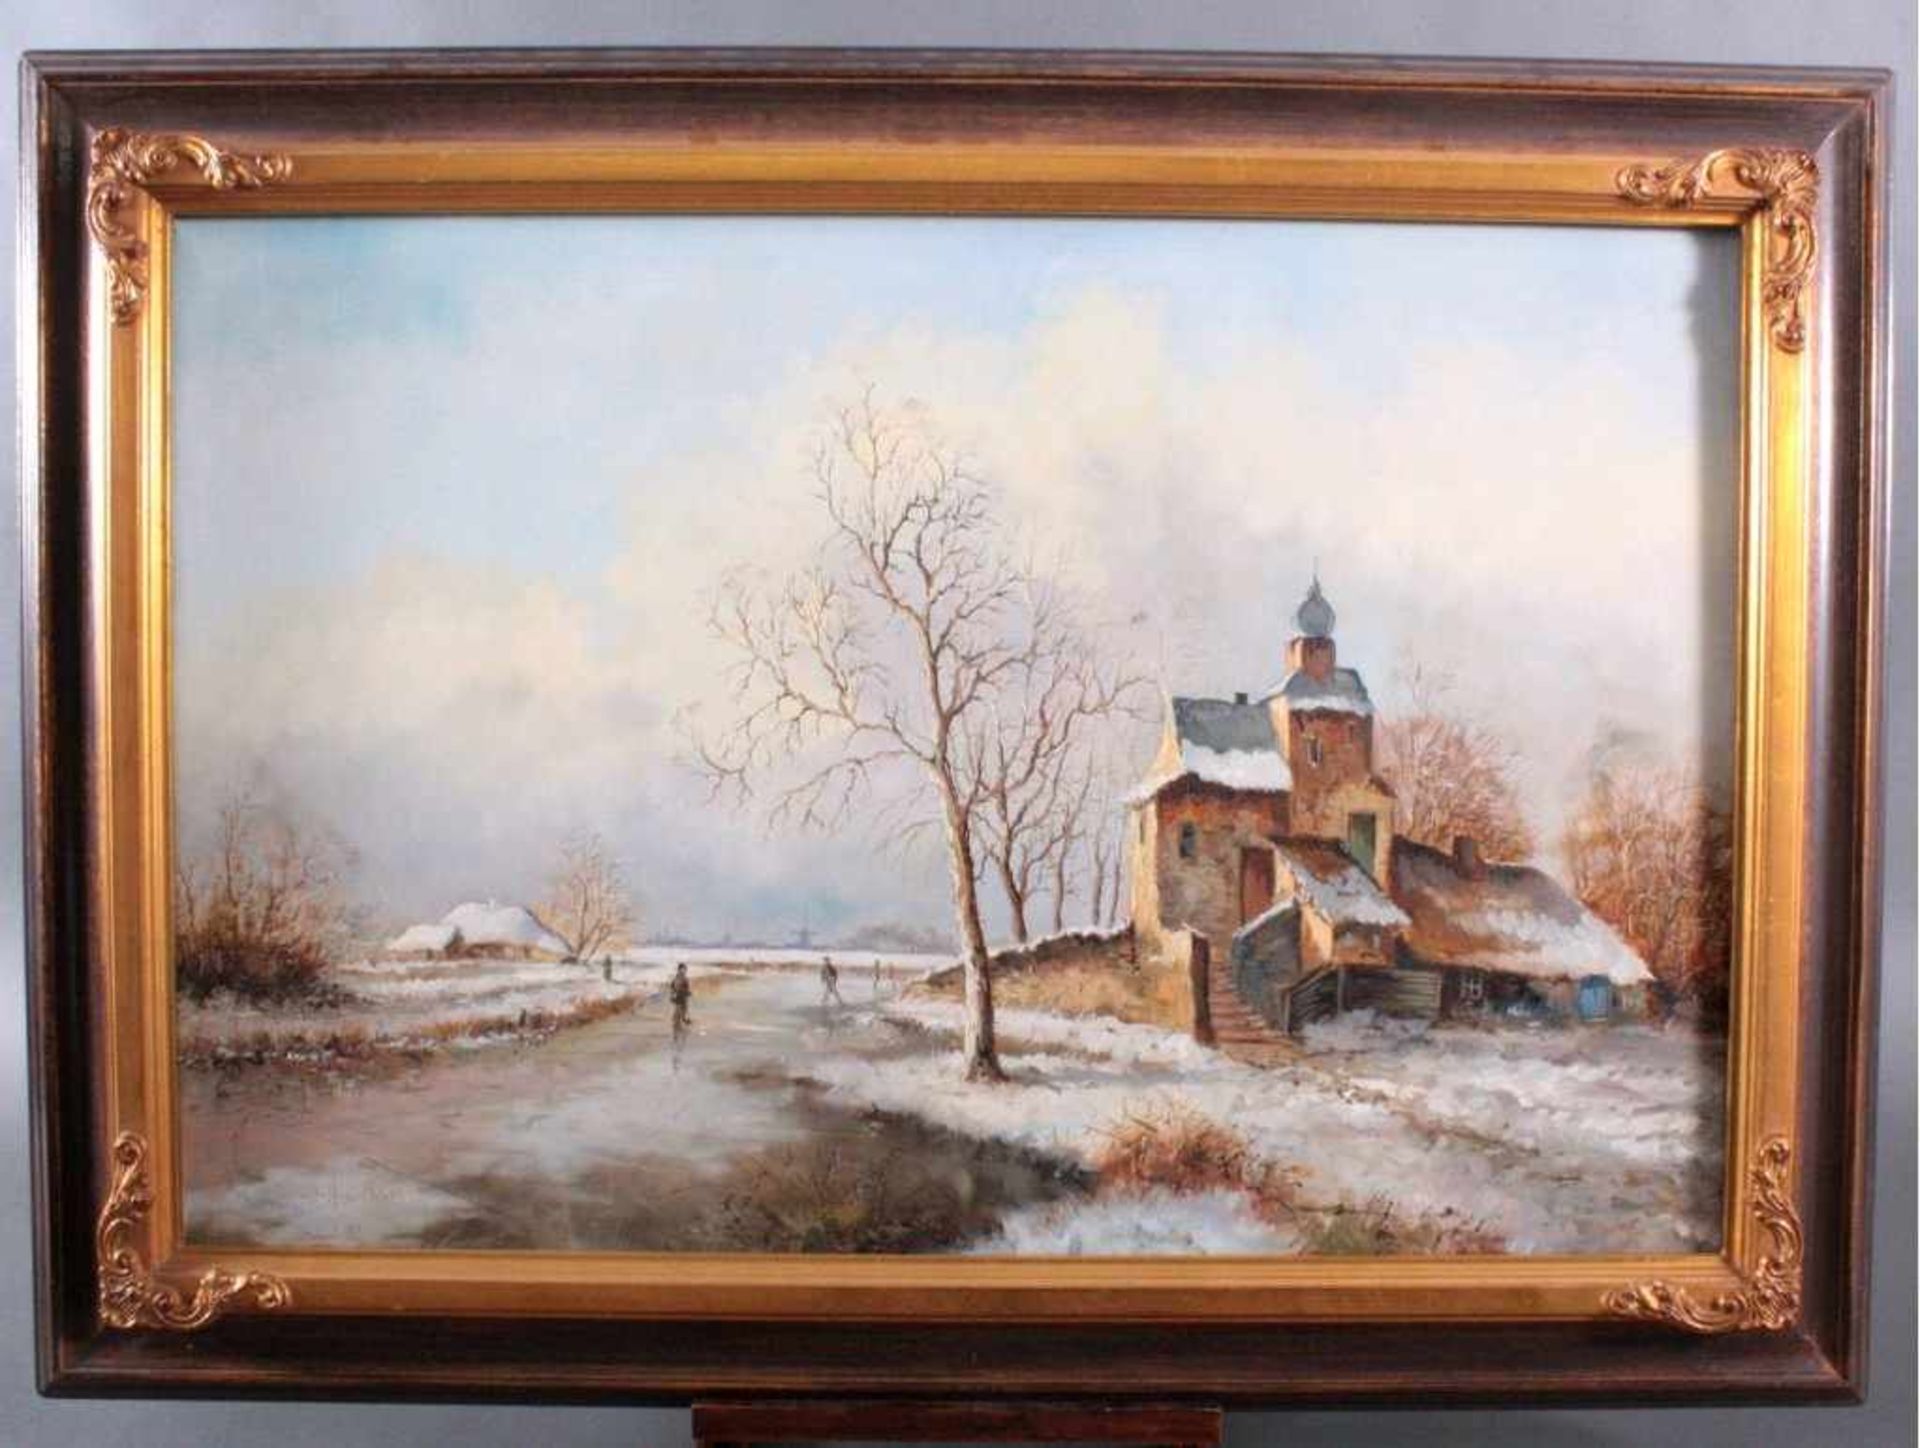 Mulder ?-?, Winterliche LandschaftÖl auf Leinwand gemalt, links unten signiert,gerahmt, ca. 60 ×